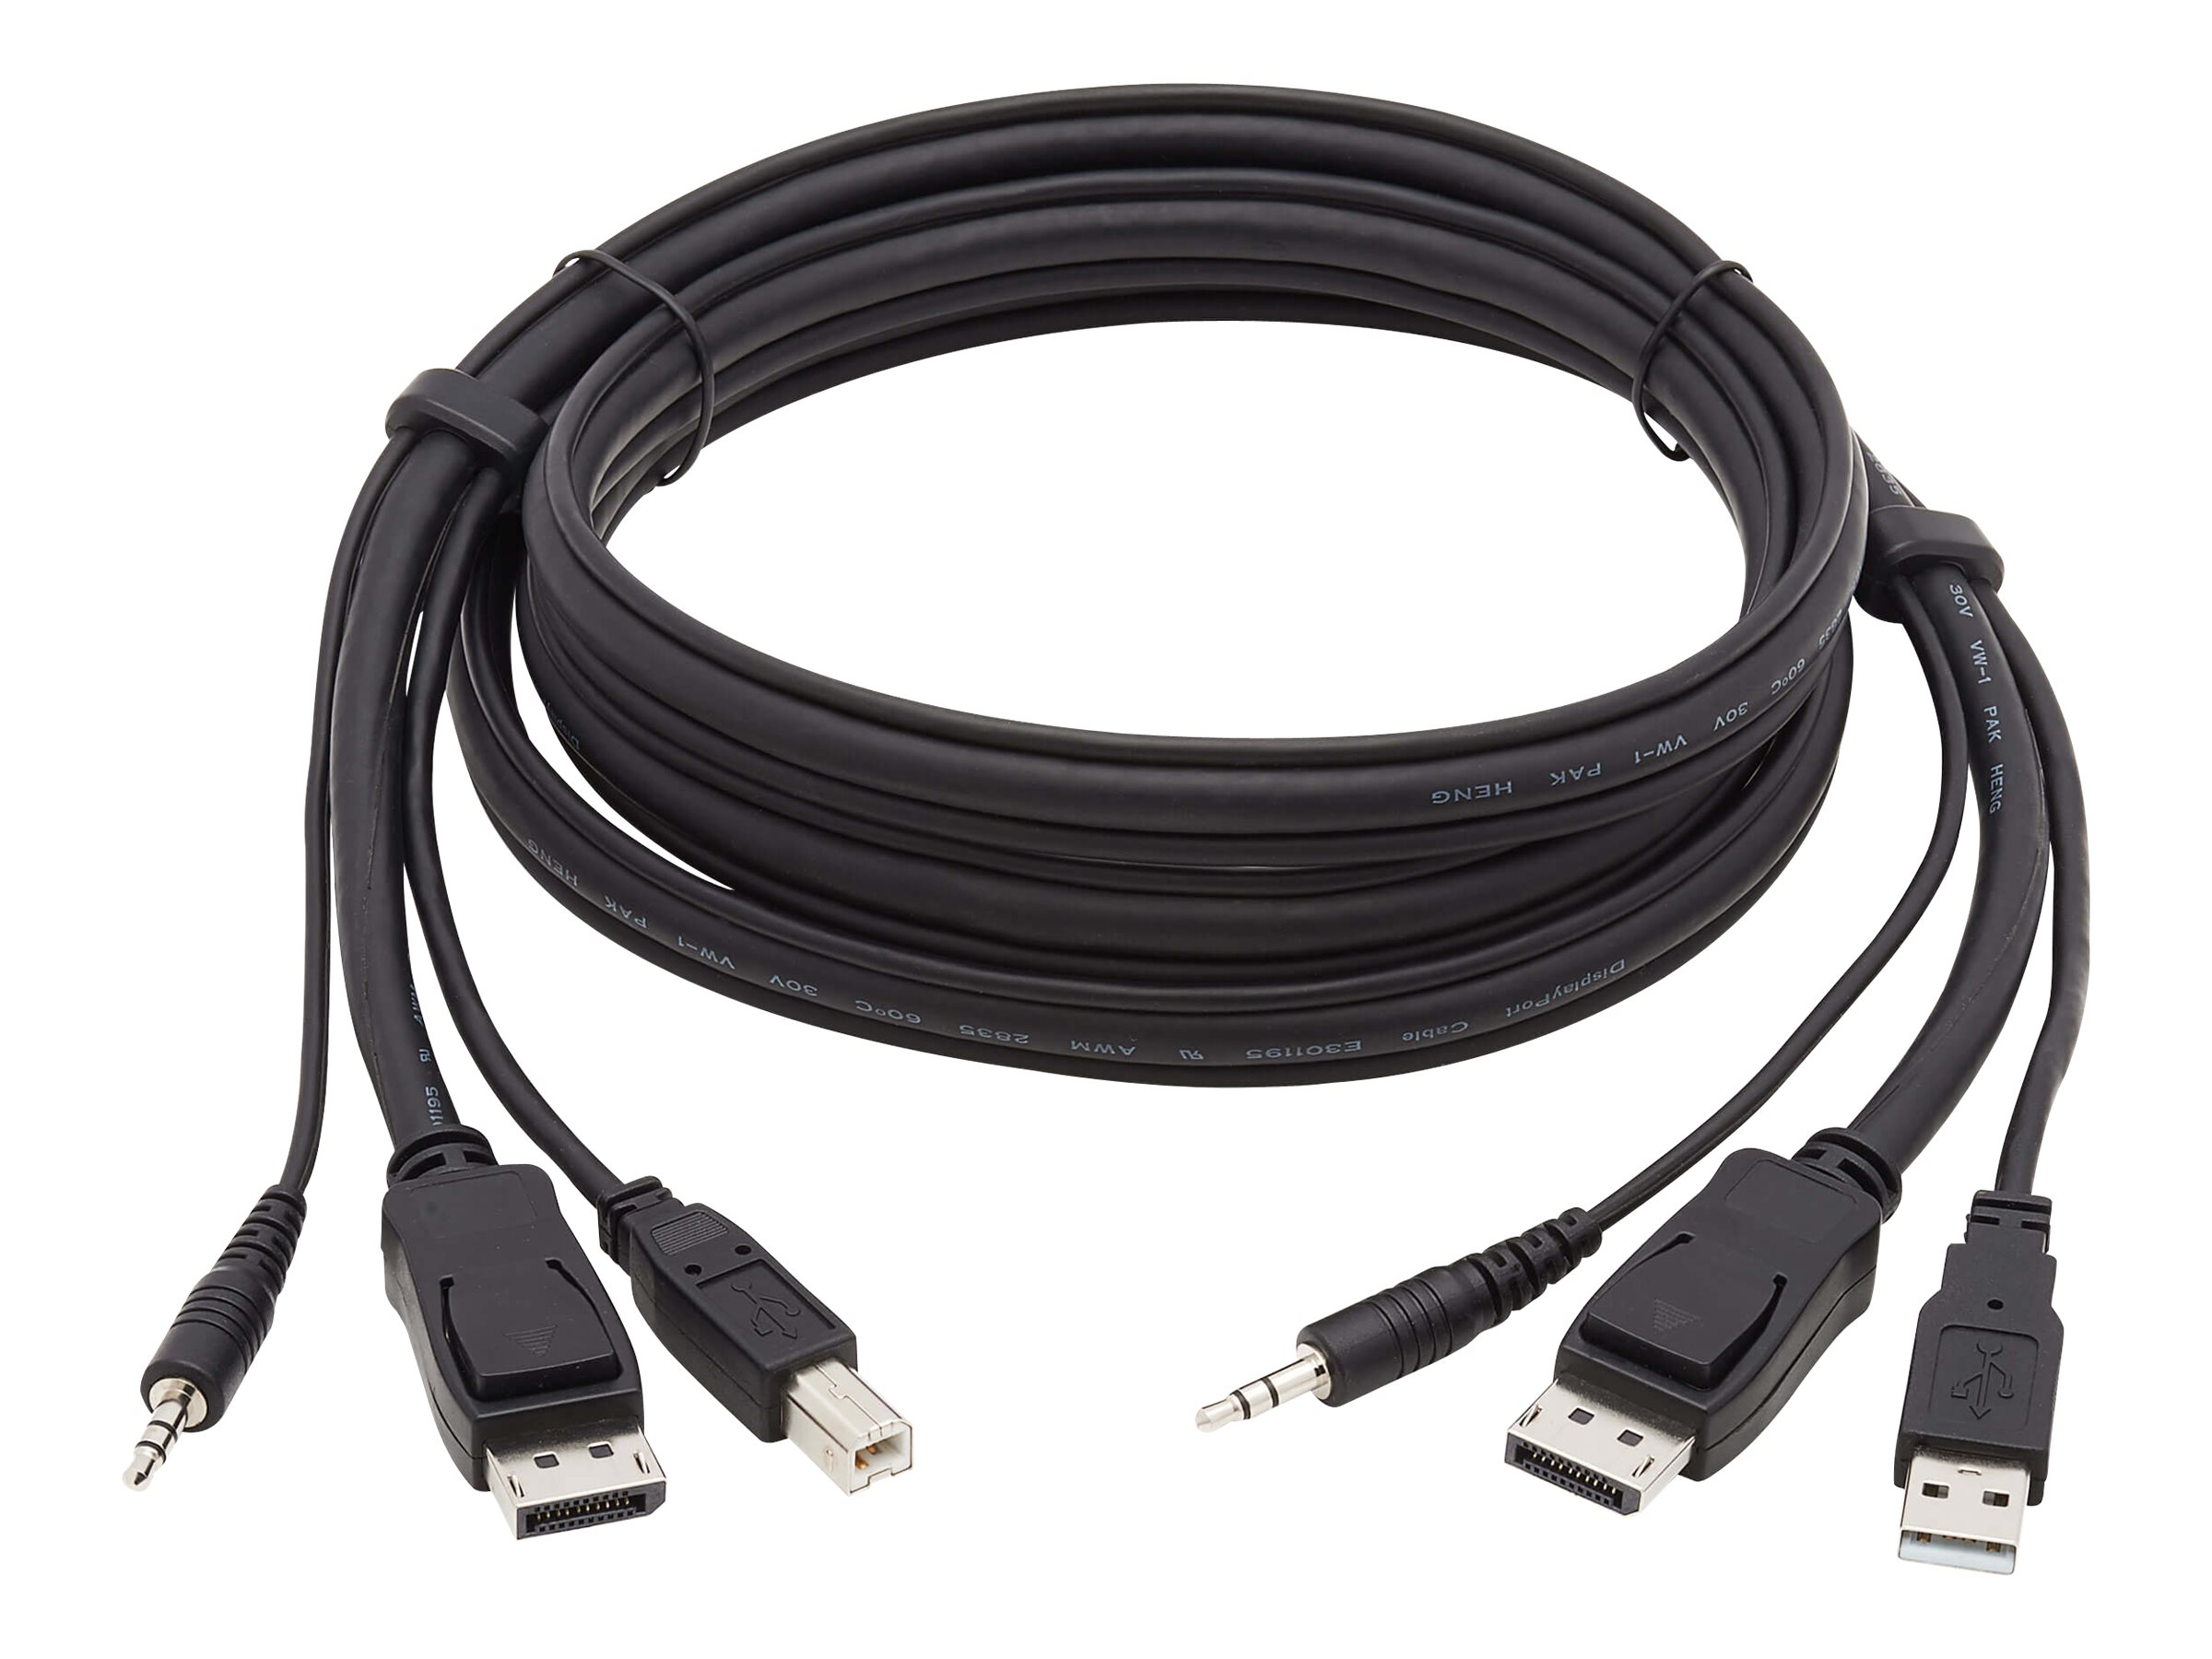 Tripp Lite DisplayPort KVM Cable Kit, 3 in 1 - 4K DisplayPort, USB, 3.5 mm Audio (3xM/3xM), 4:4:4, 1.83 m, Black - Video- / USB-